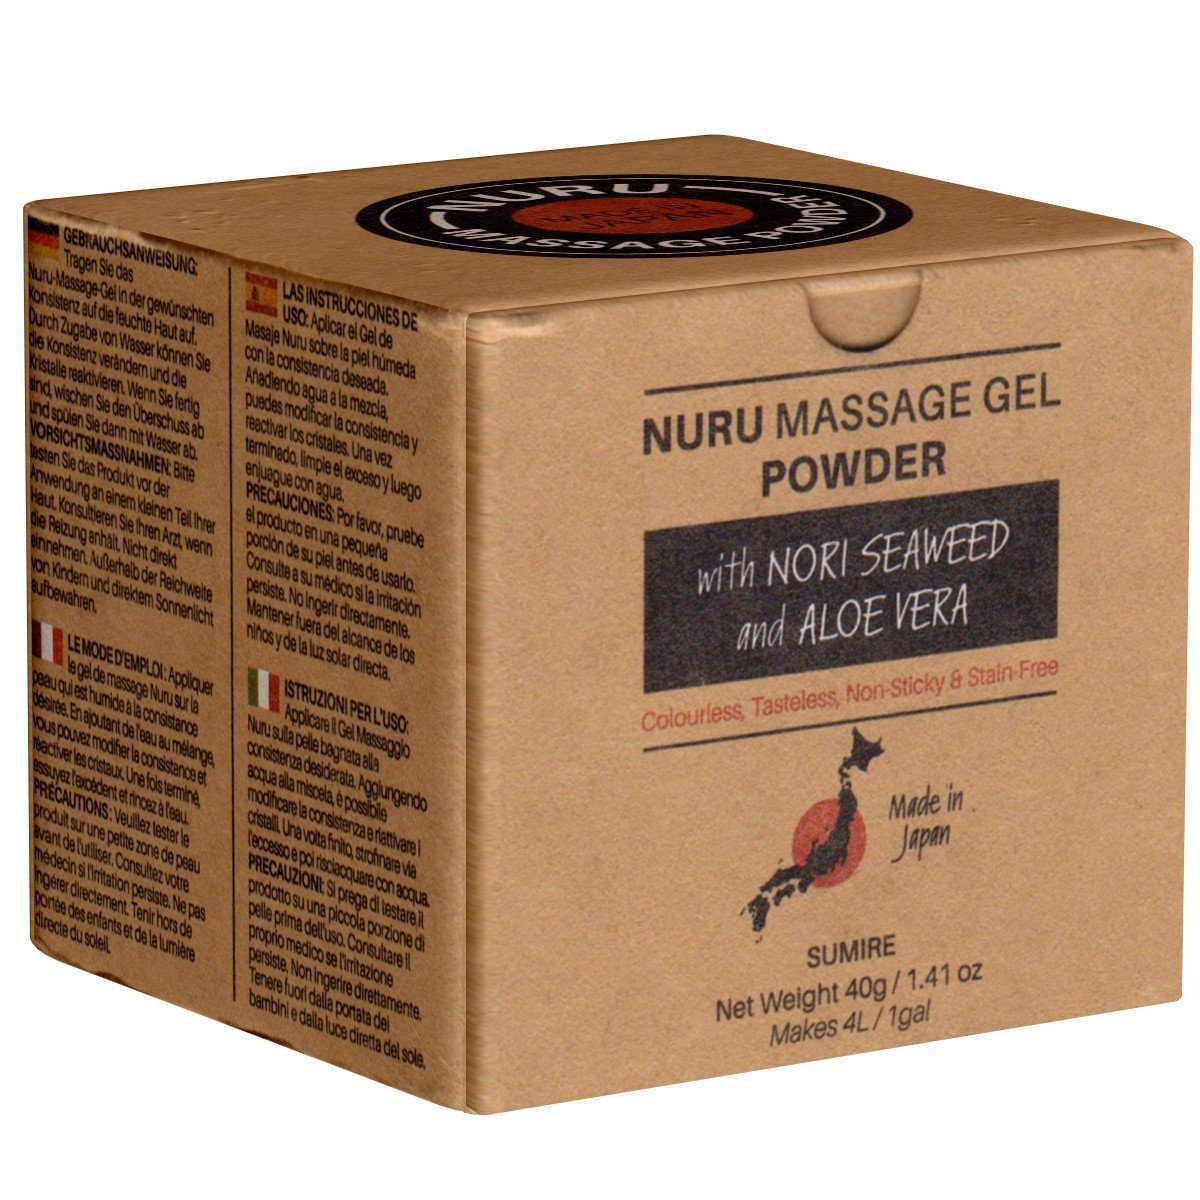 Made in Japan Gleit- und Massagegel Nuru Massage Gel Powder (Nori Seaweed & Aloe Vera), SUMIRE Edition, Dose mit 40g, 1-tlg., japanisches Massagegel-Pulver aus natürlichen Inhaltsstoffen | Gleitgele